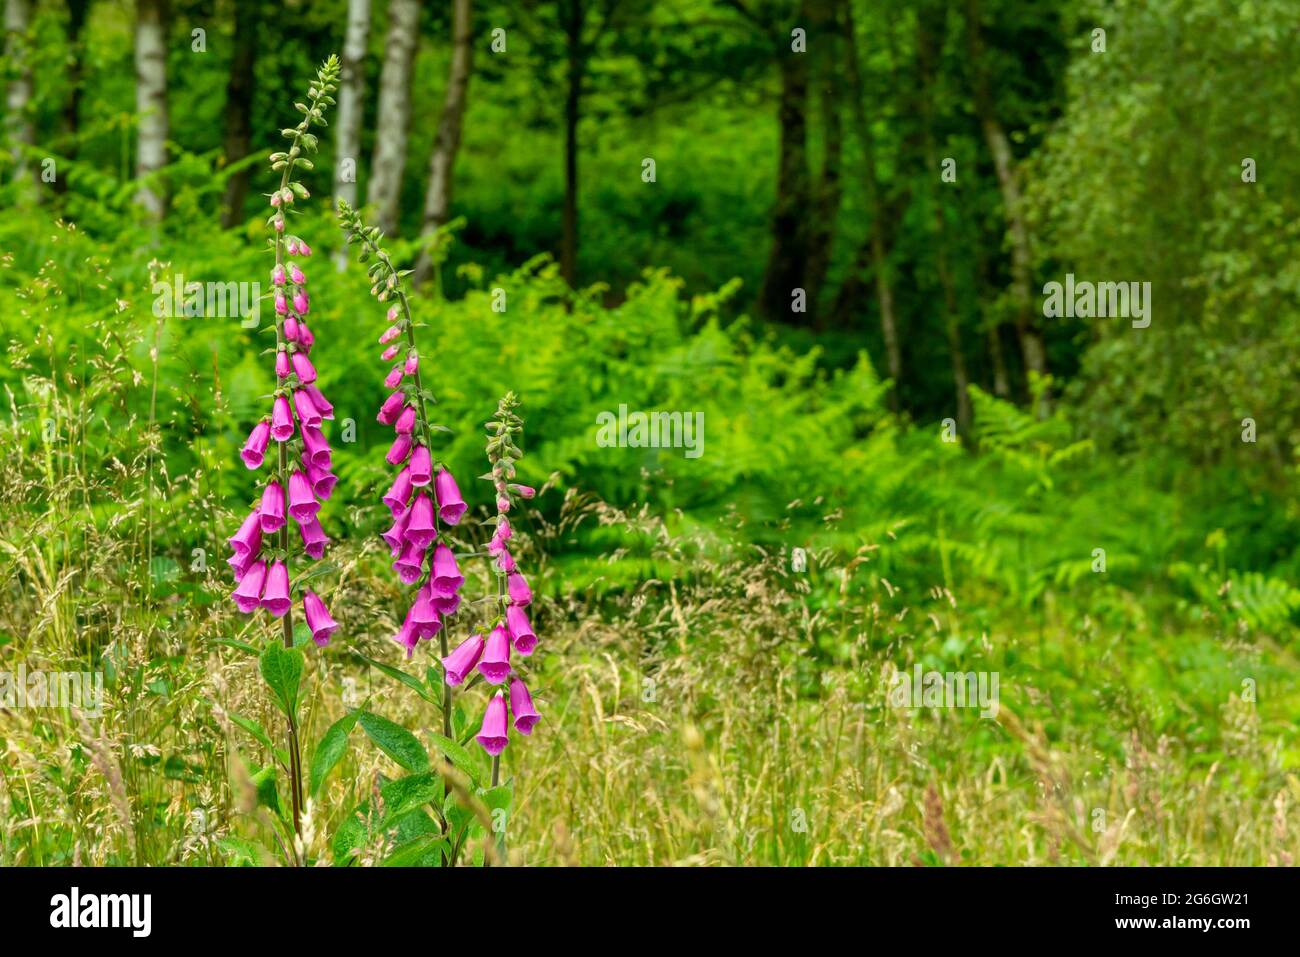 Nahaufnahme eines gewöhnlichen Fuchshandschuhs oder Digitalis purpurea eine Blume aus der Familie der Plantaginaceae, die in Europa, Asien und Afrika gefunden wird. Stockfoto